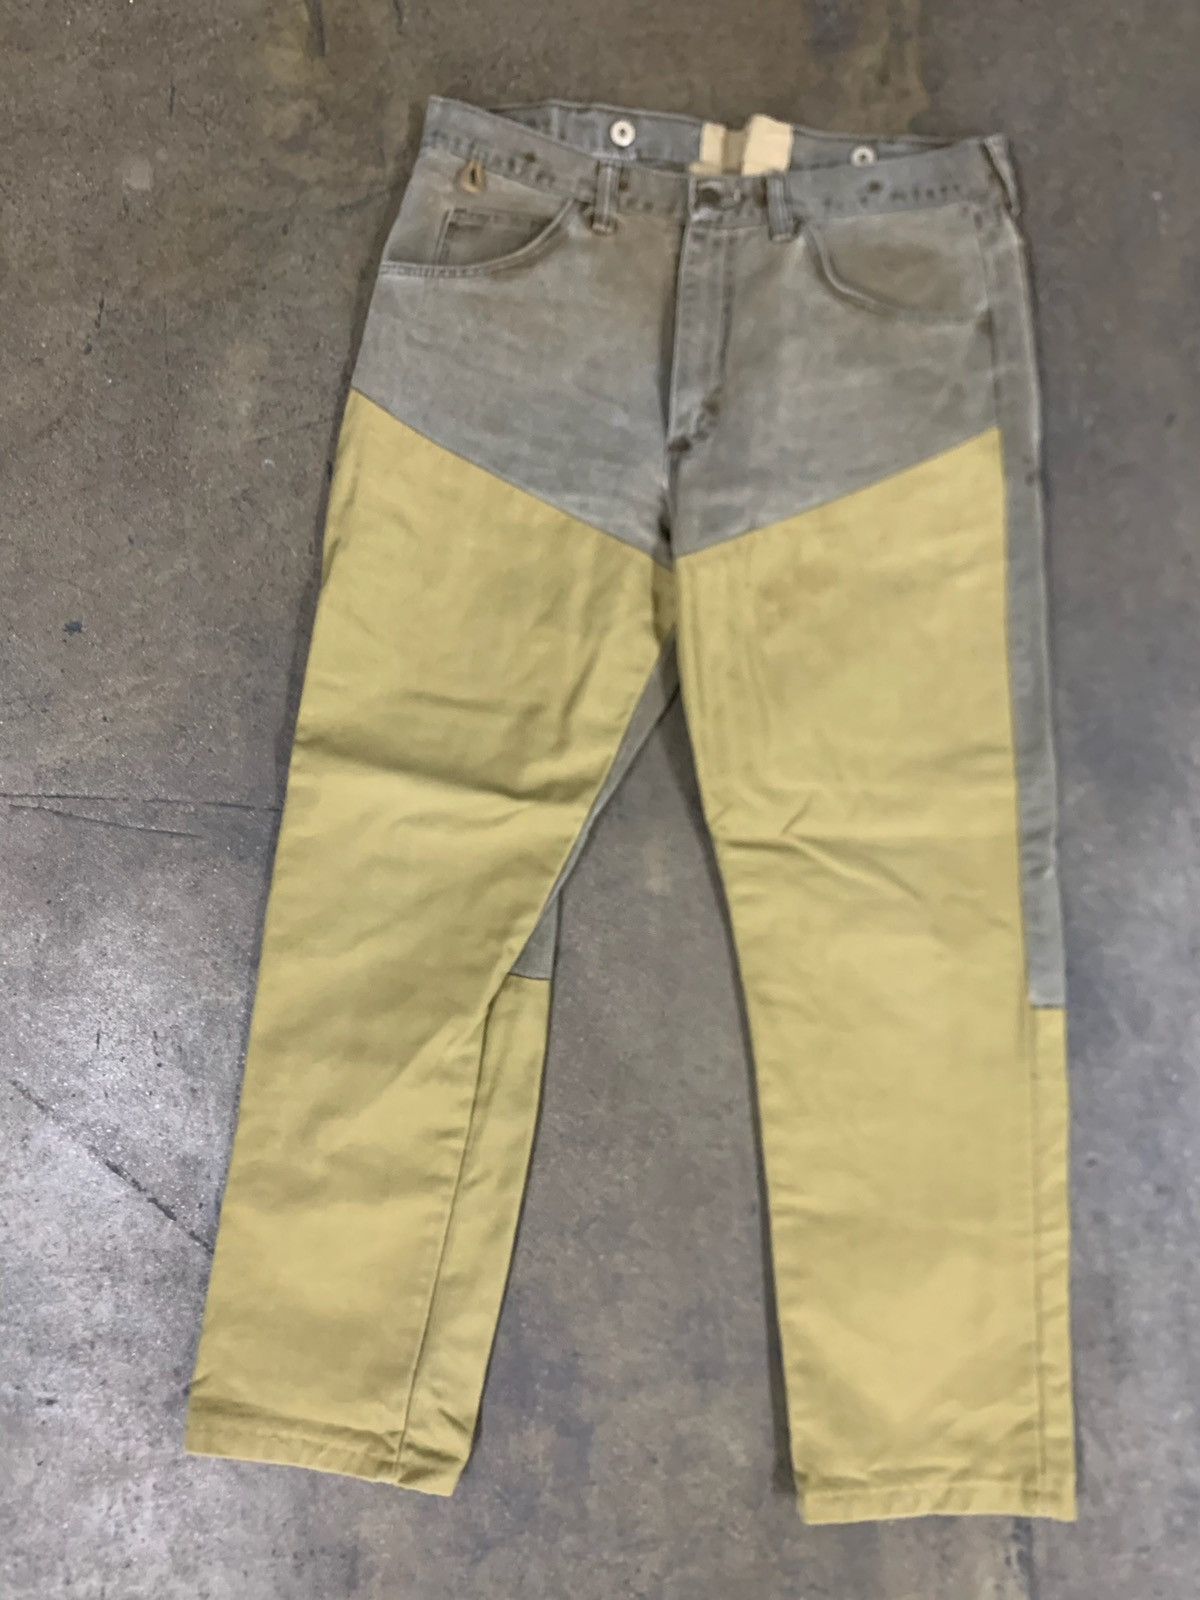 Wrangler Wrangler 34 x 30 Doubleknee Hunting Jeans | Grailed